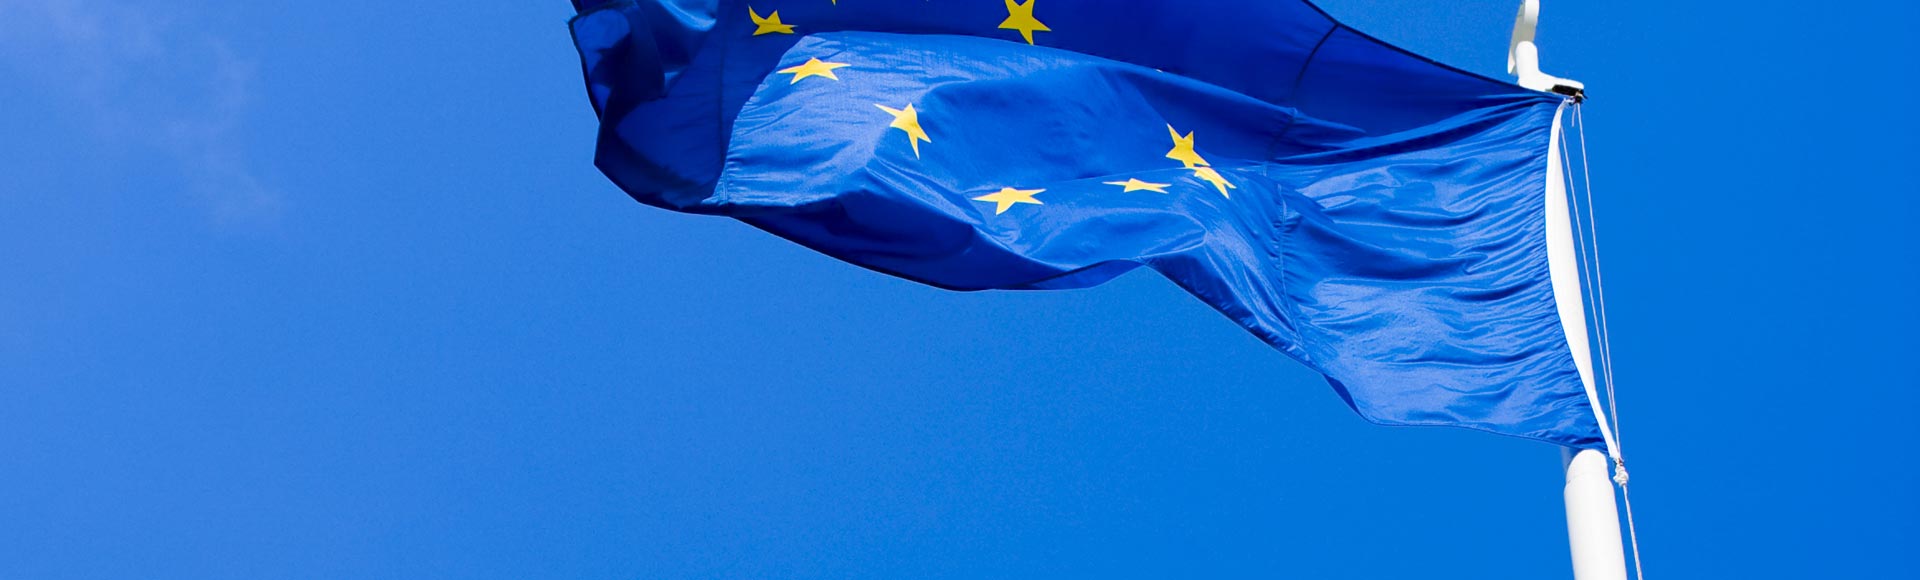 La Directica de Distribución publicada en el Boletín Oficial de la Unión Europea